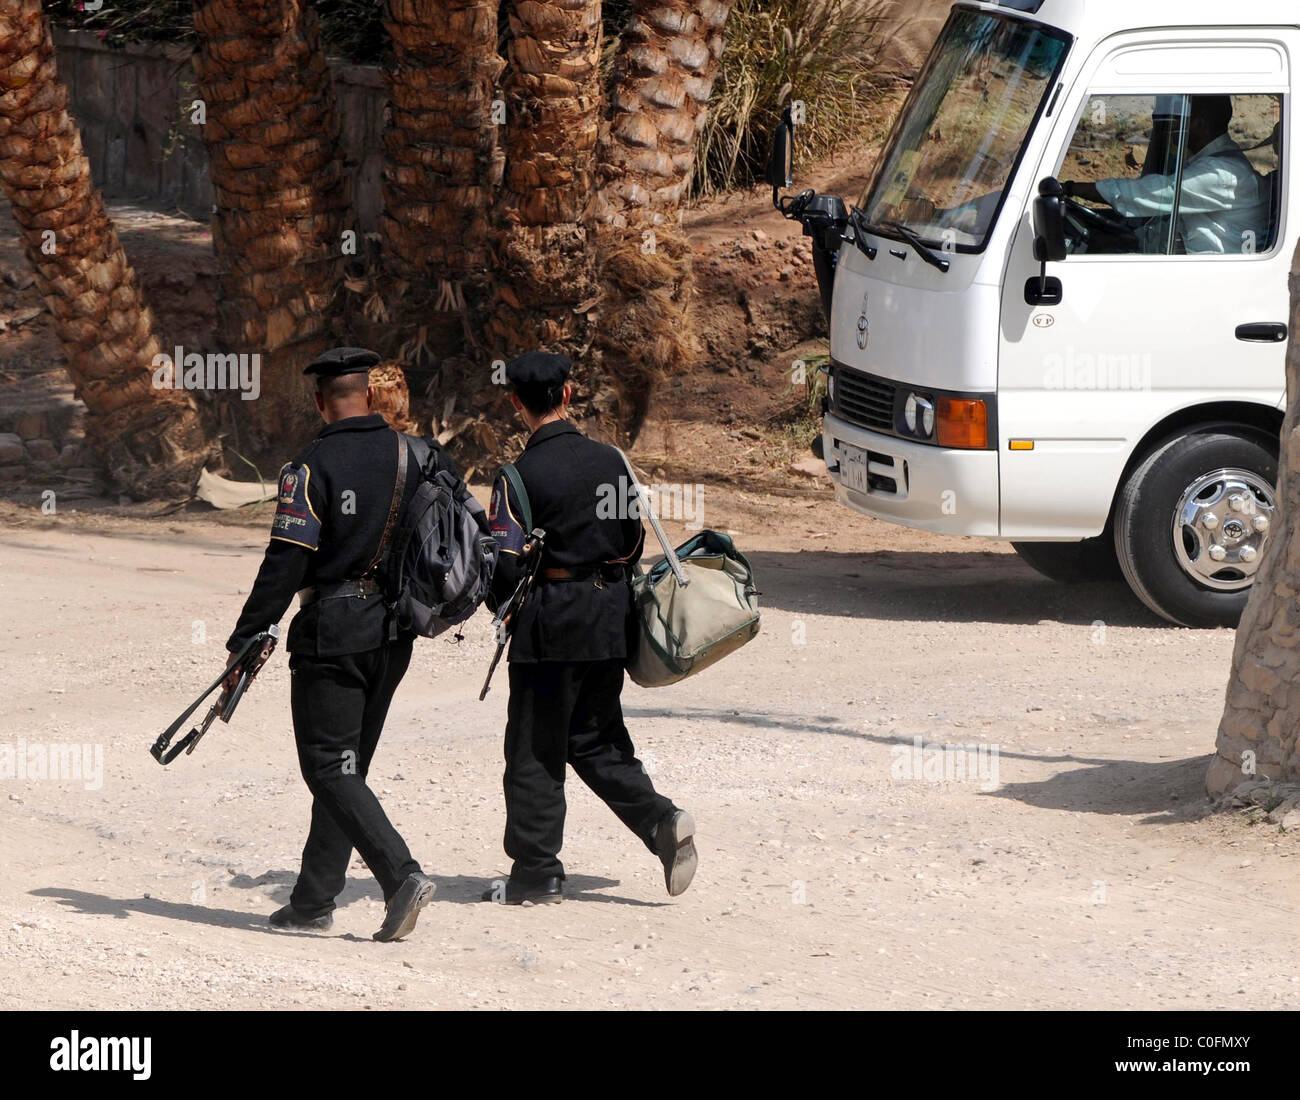 La sécurité en Egypte, site touristique, garde armée Banque D'Images